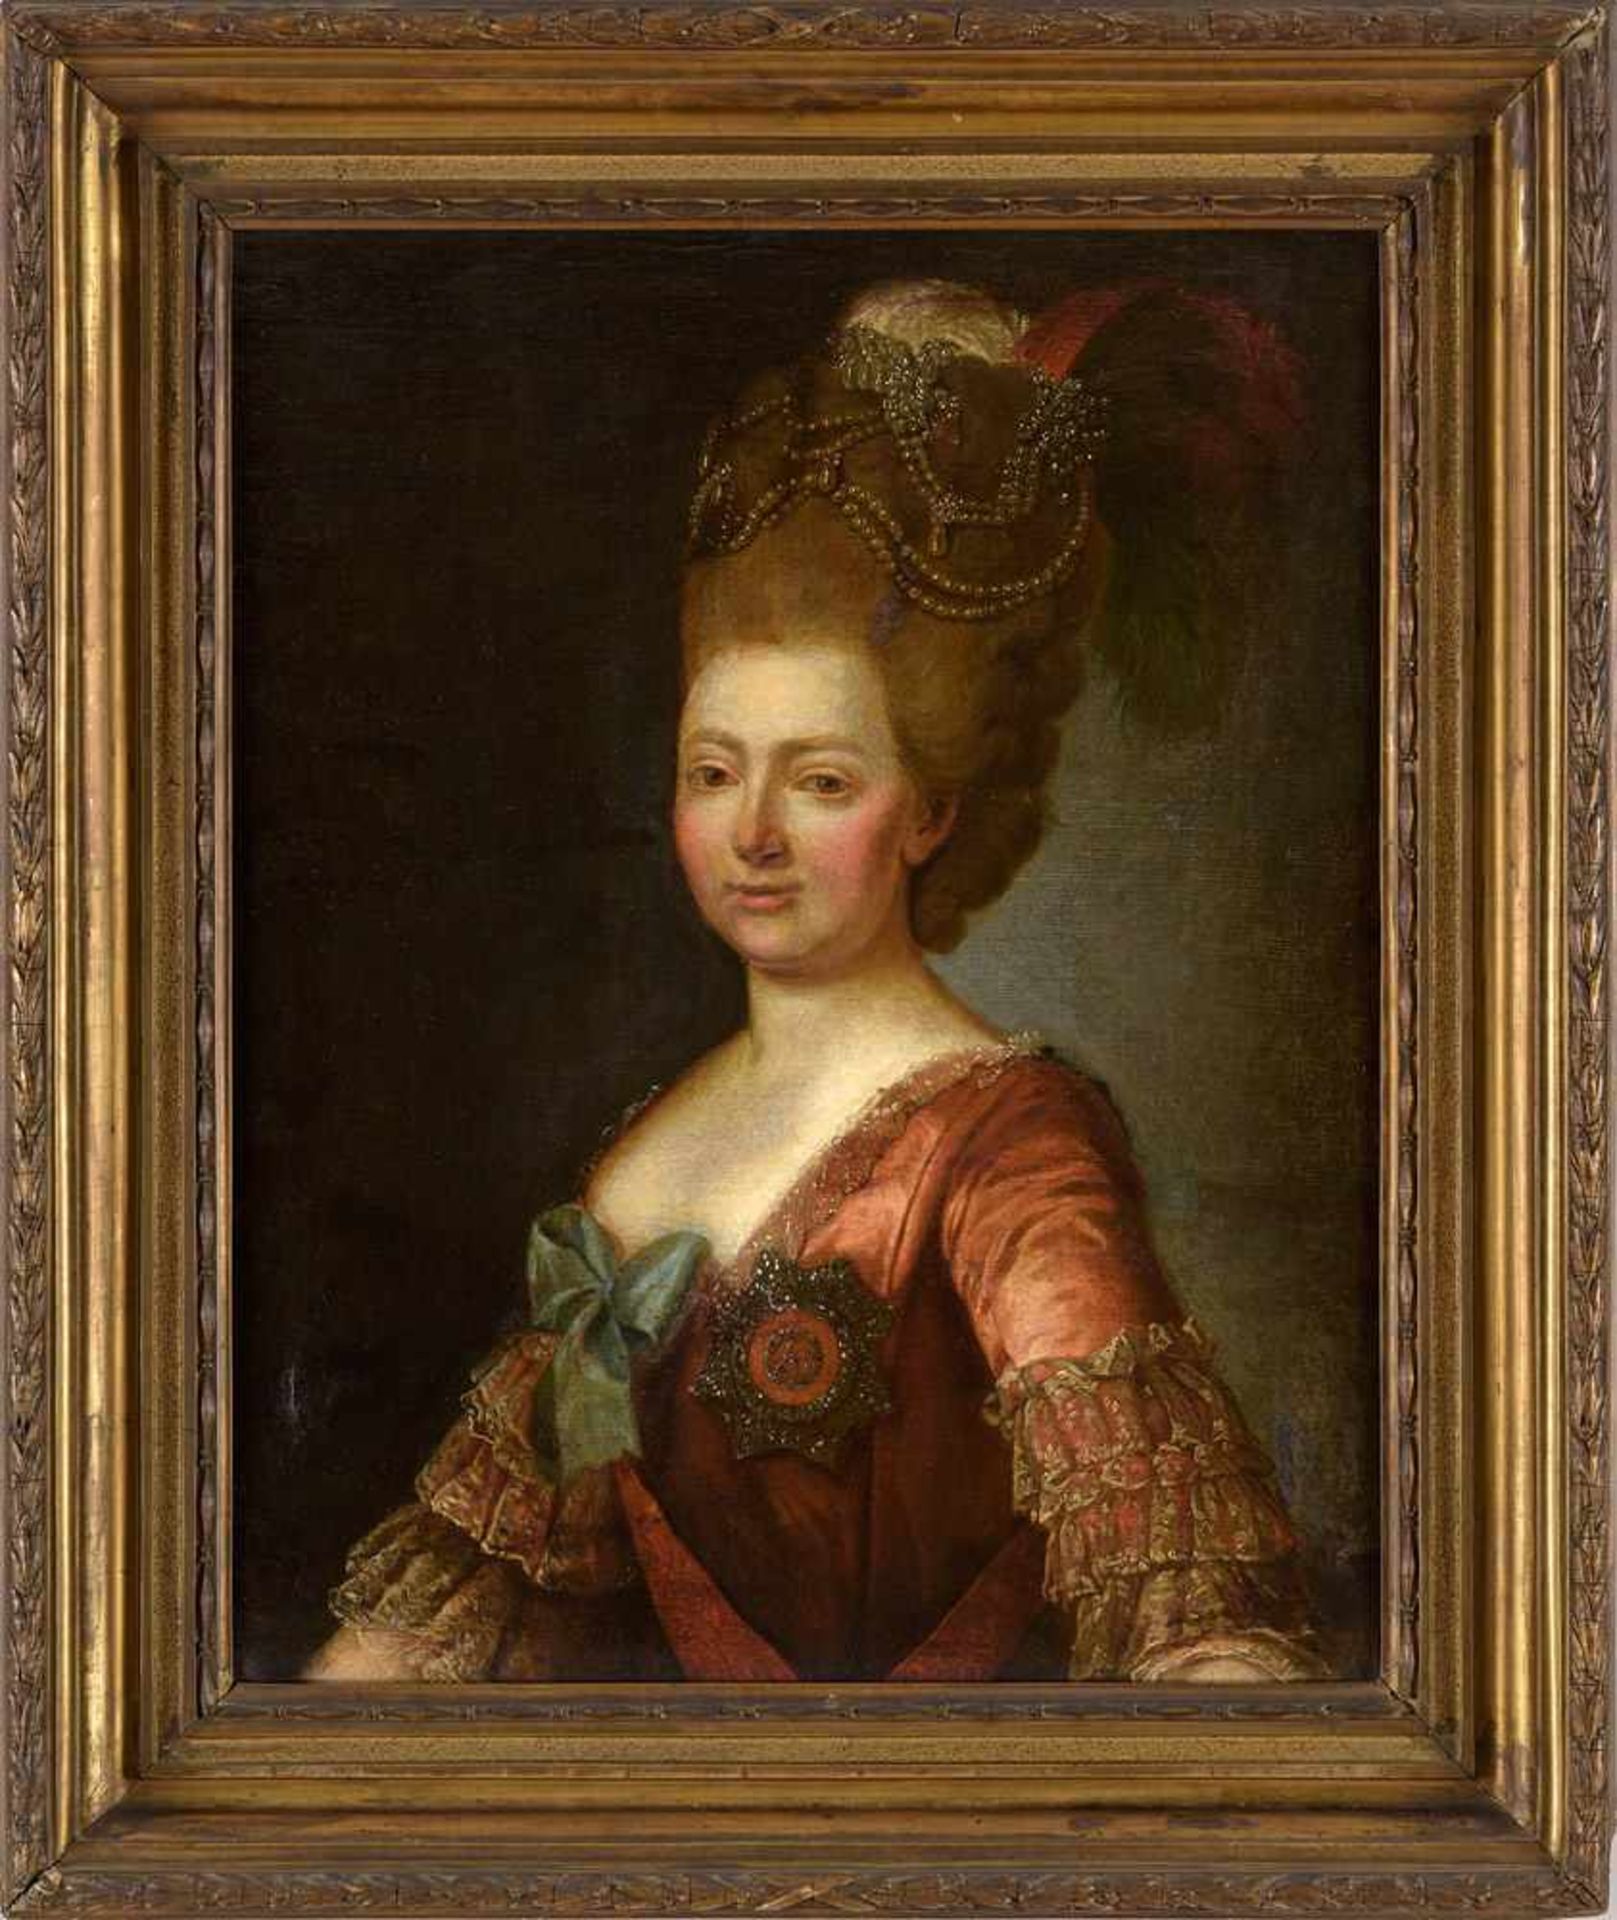 Russischer Meister 18. Jhdt.Portrait Maria Fedorowna Romanowa.Öl/Lwd./doubl., 82 x 62 cm. - Bild 2 aus 3